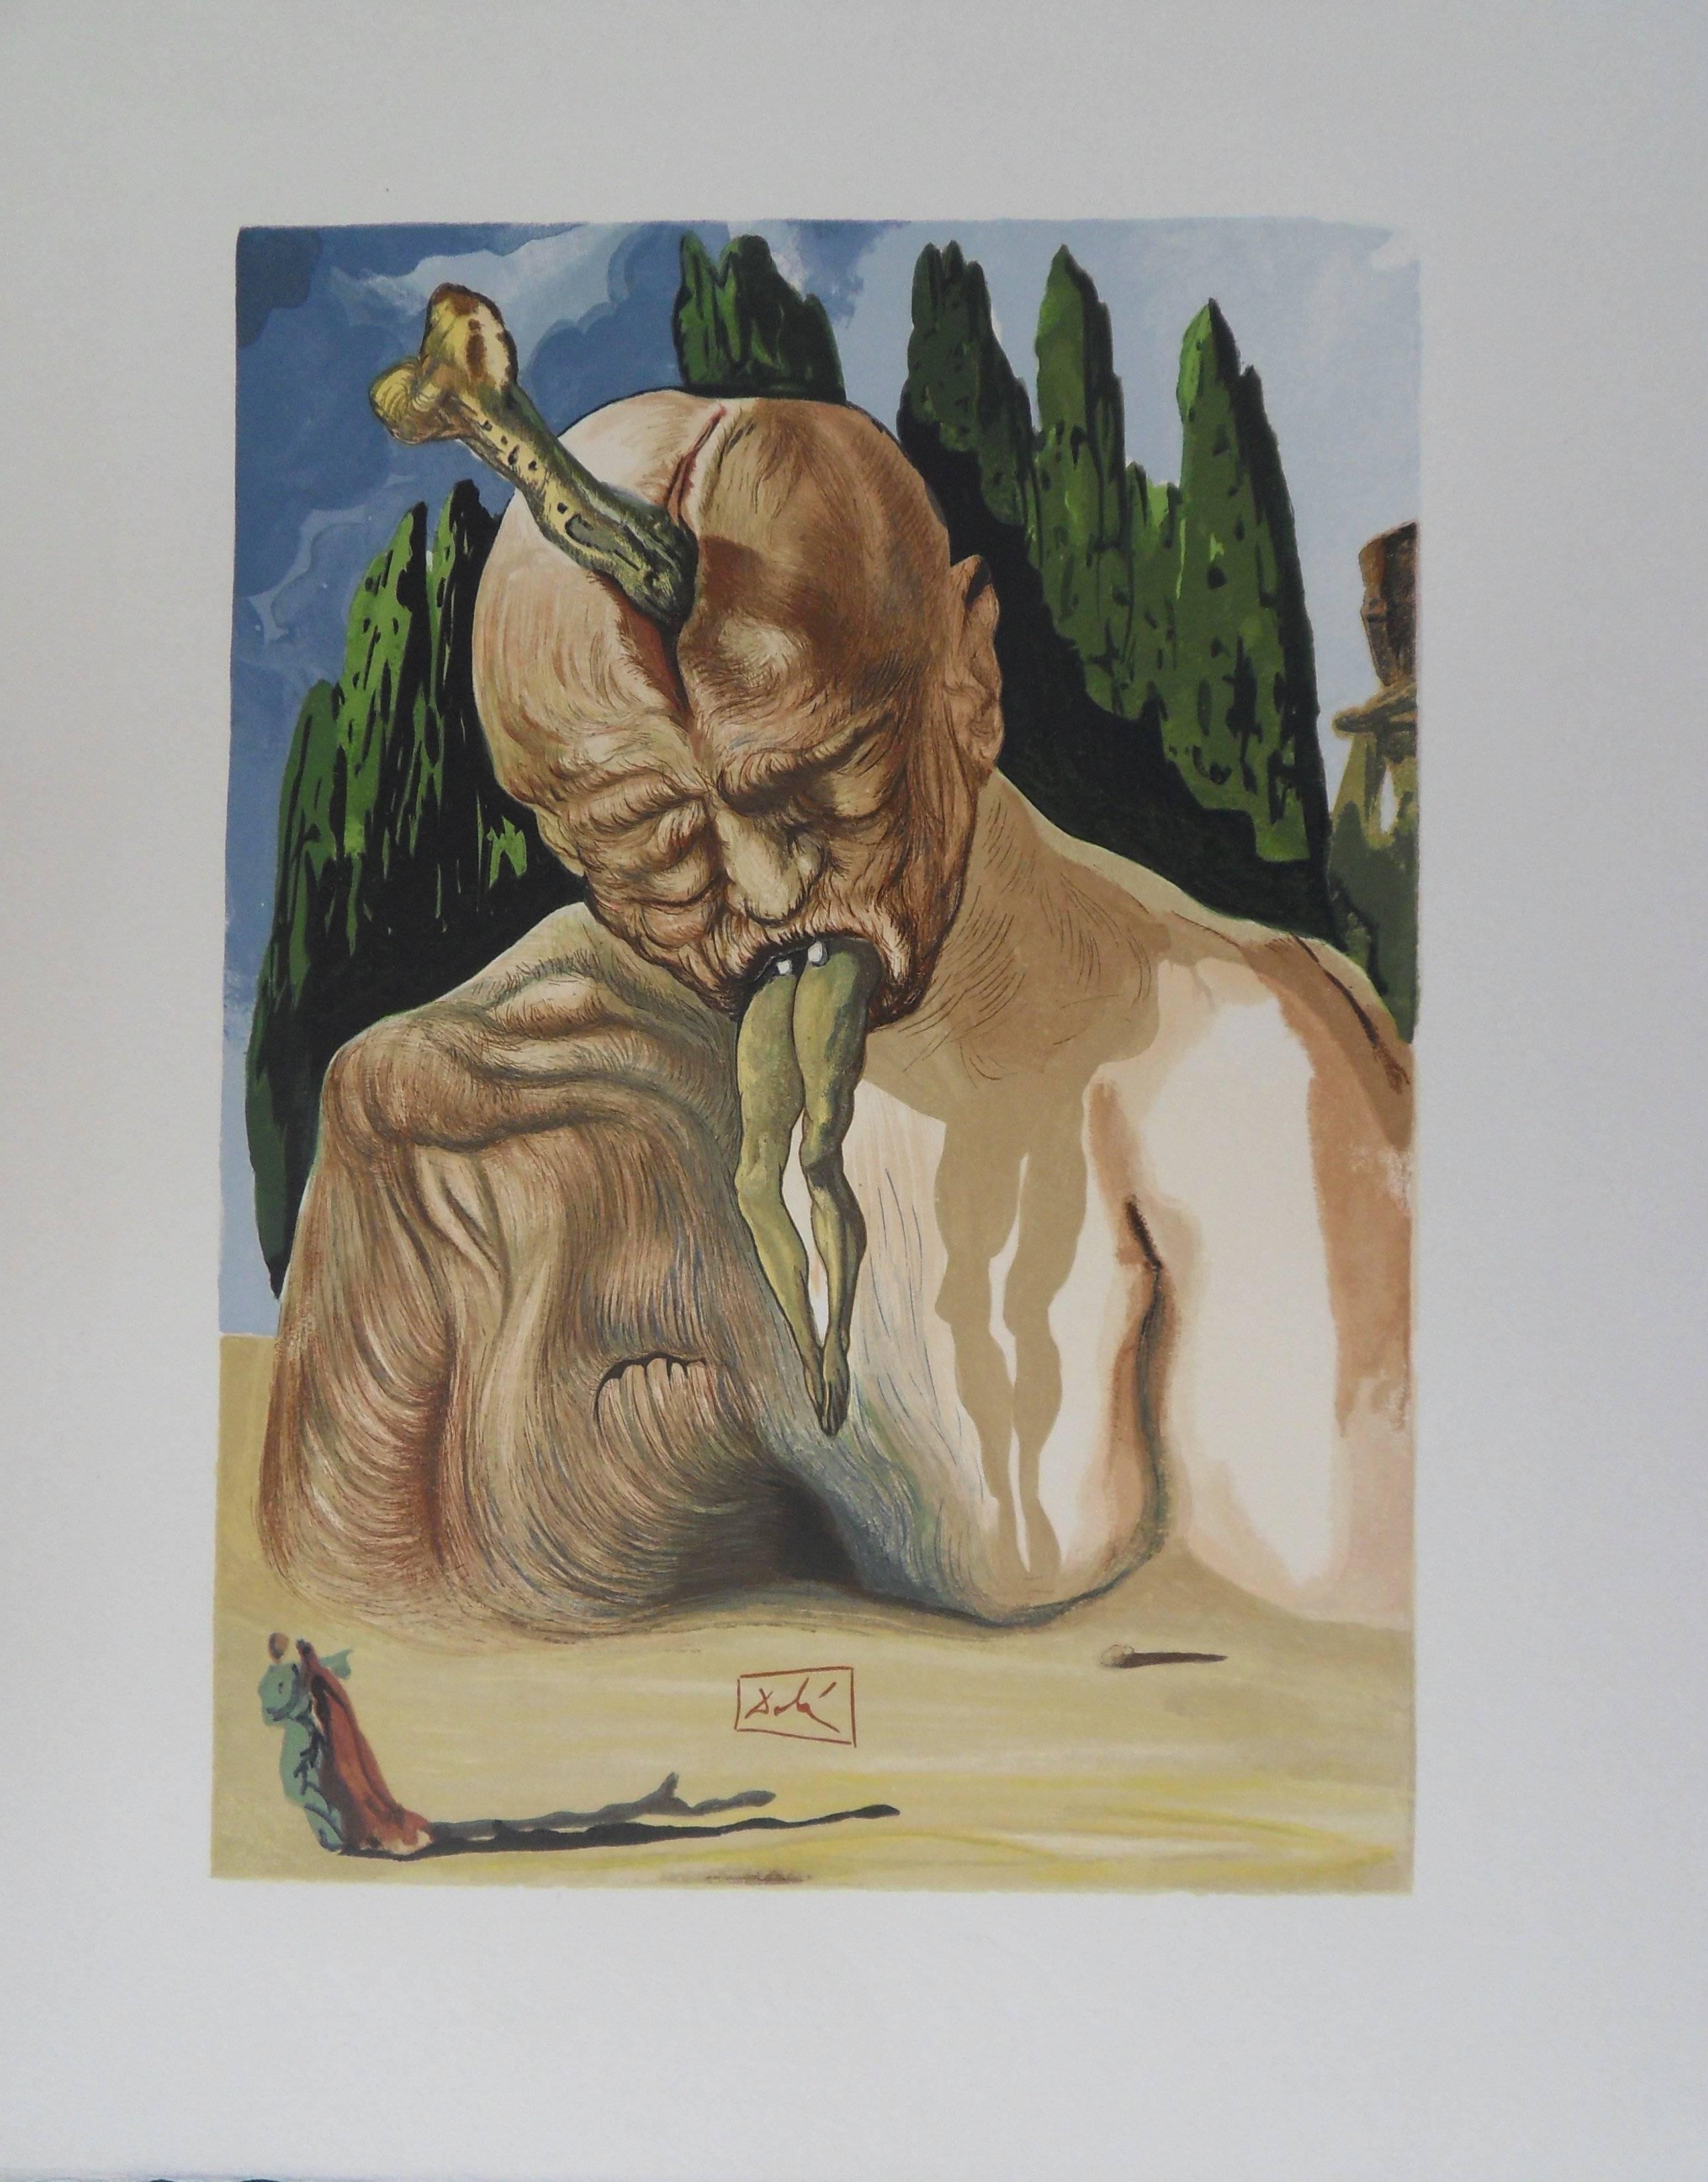 Figurative Print Salvador Dalí - Hell 27 - Le diable Logique - gravure sur bois - 1963 (Field n° 189)